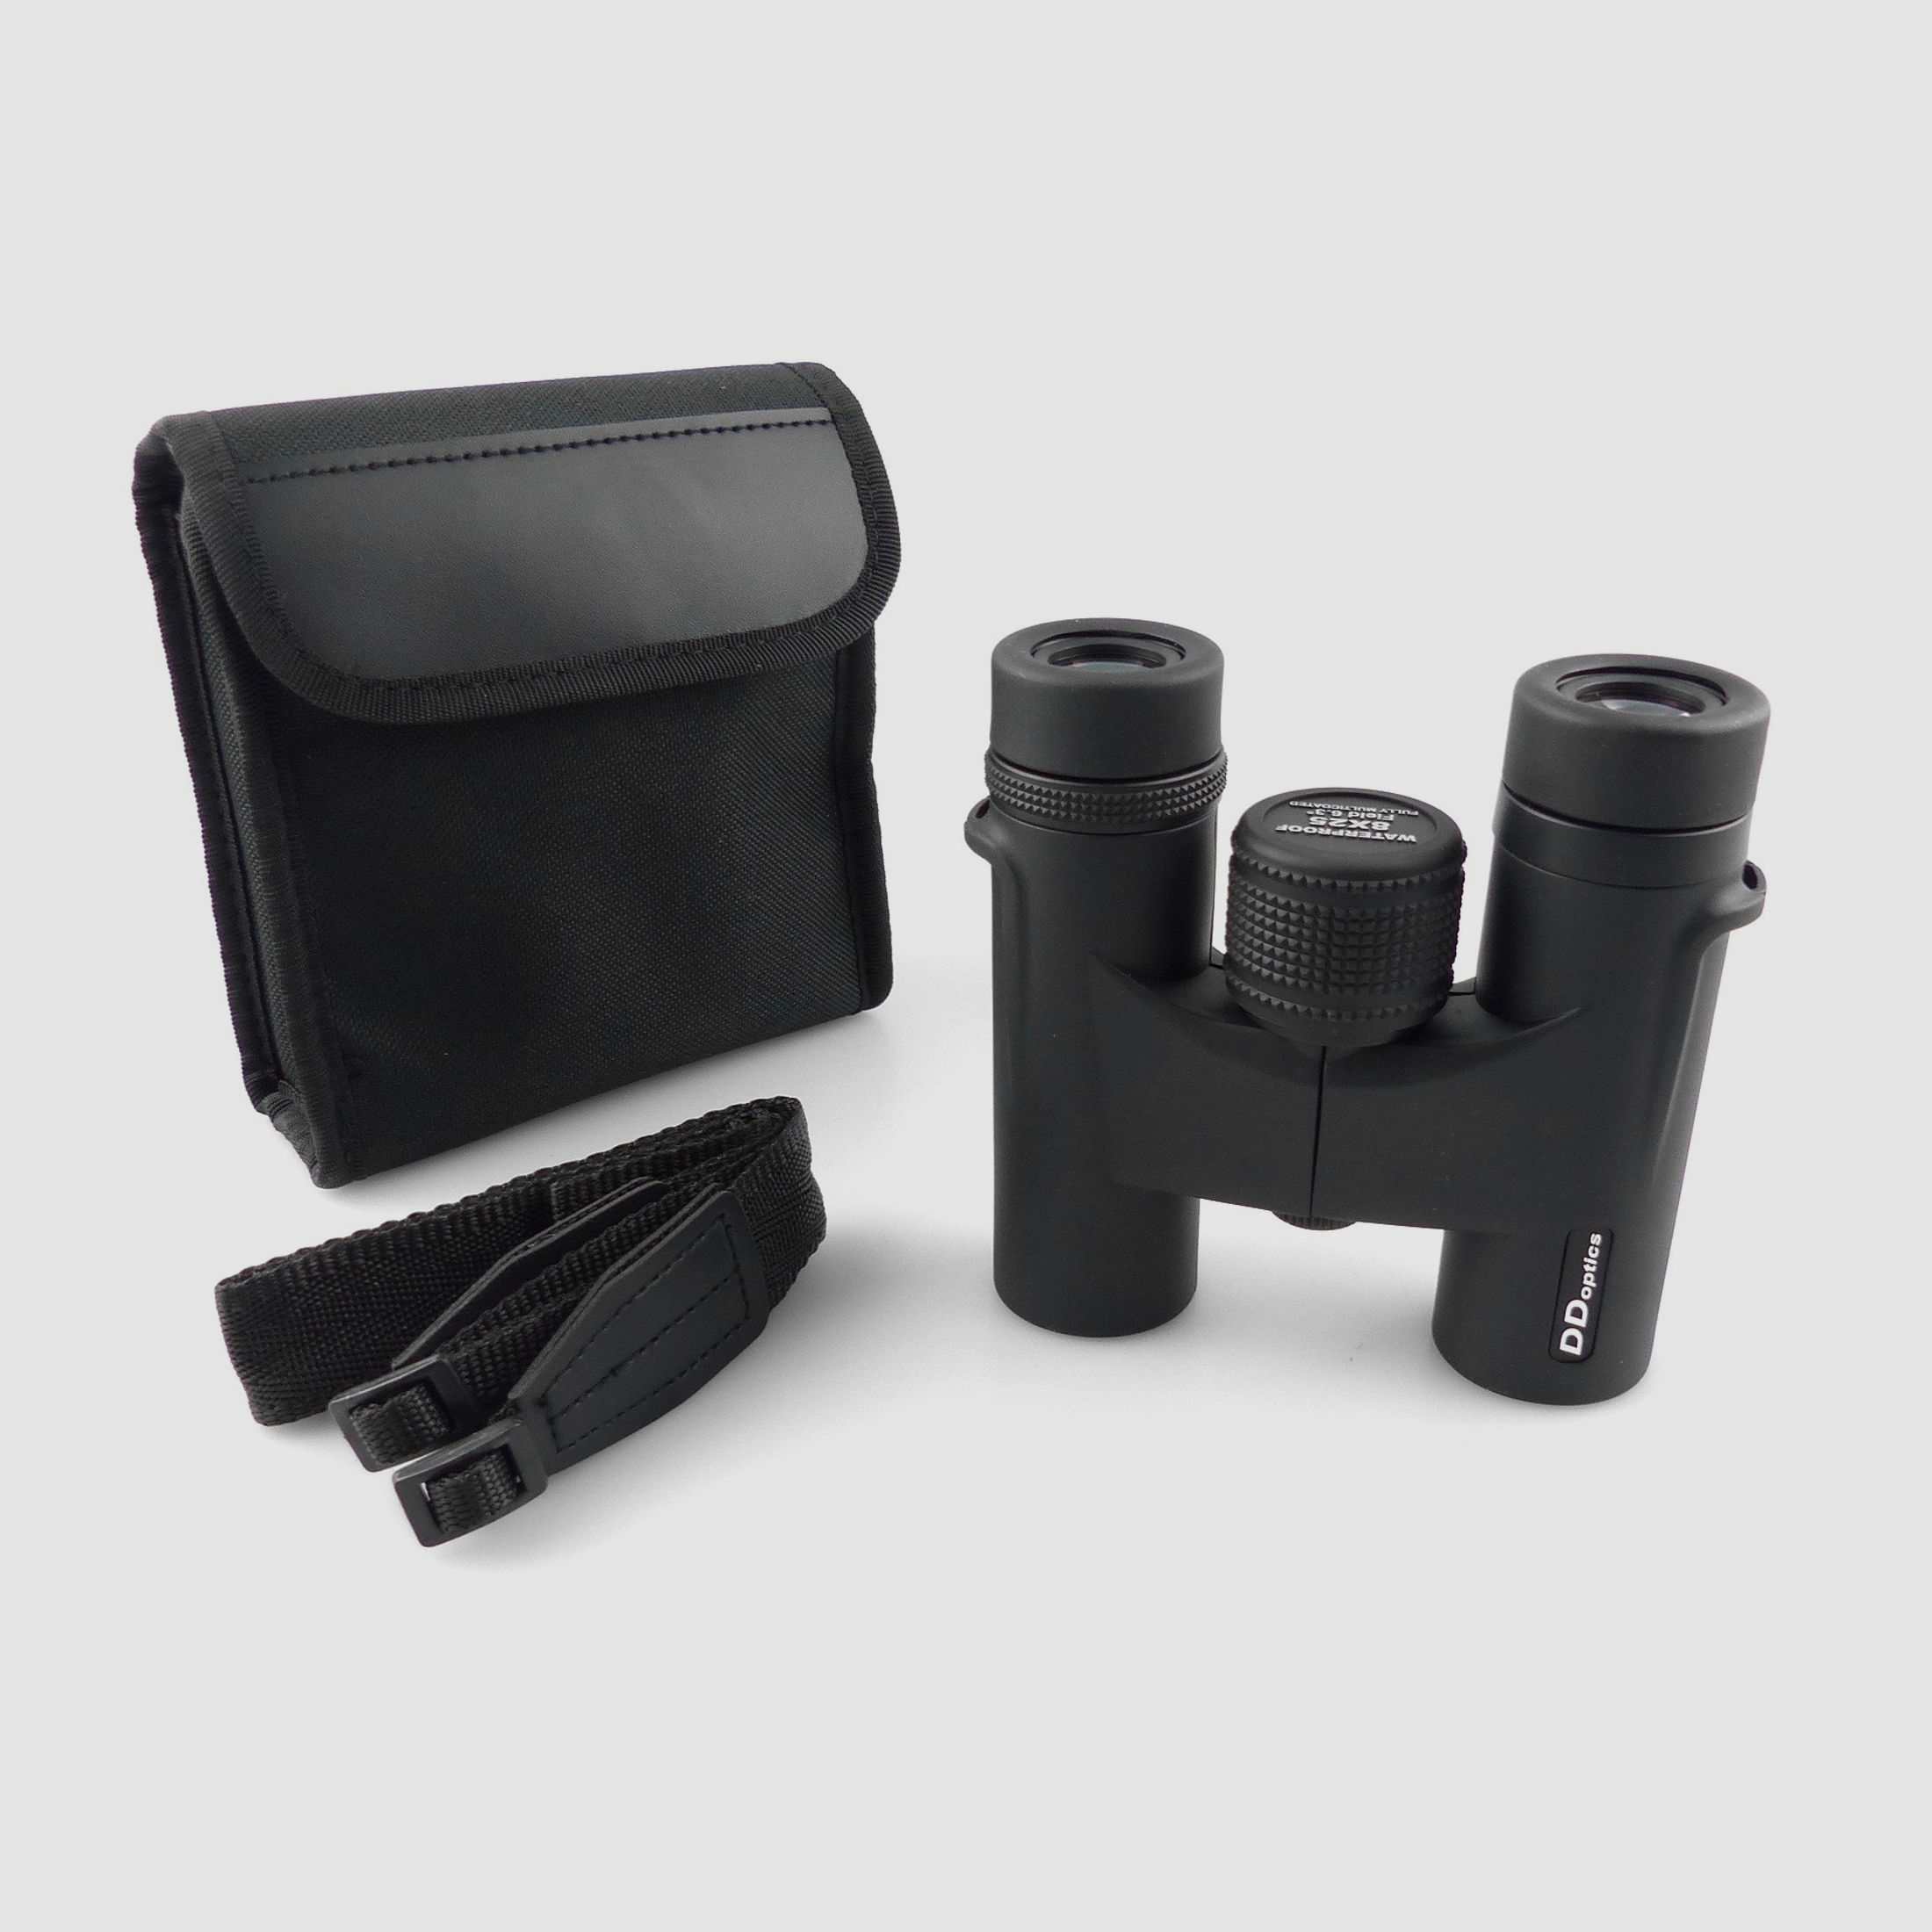 DDoptics Fernglas High Quality 8x25 schwarz mit Tasche und Trageriemen